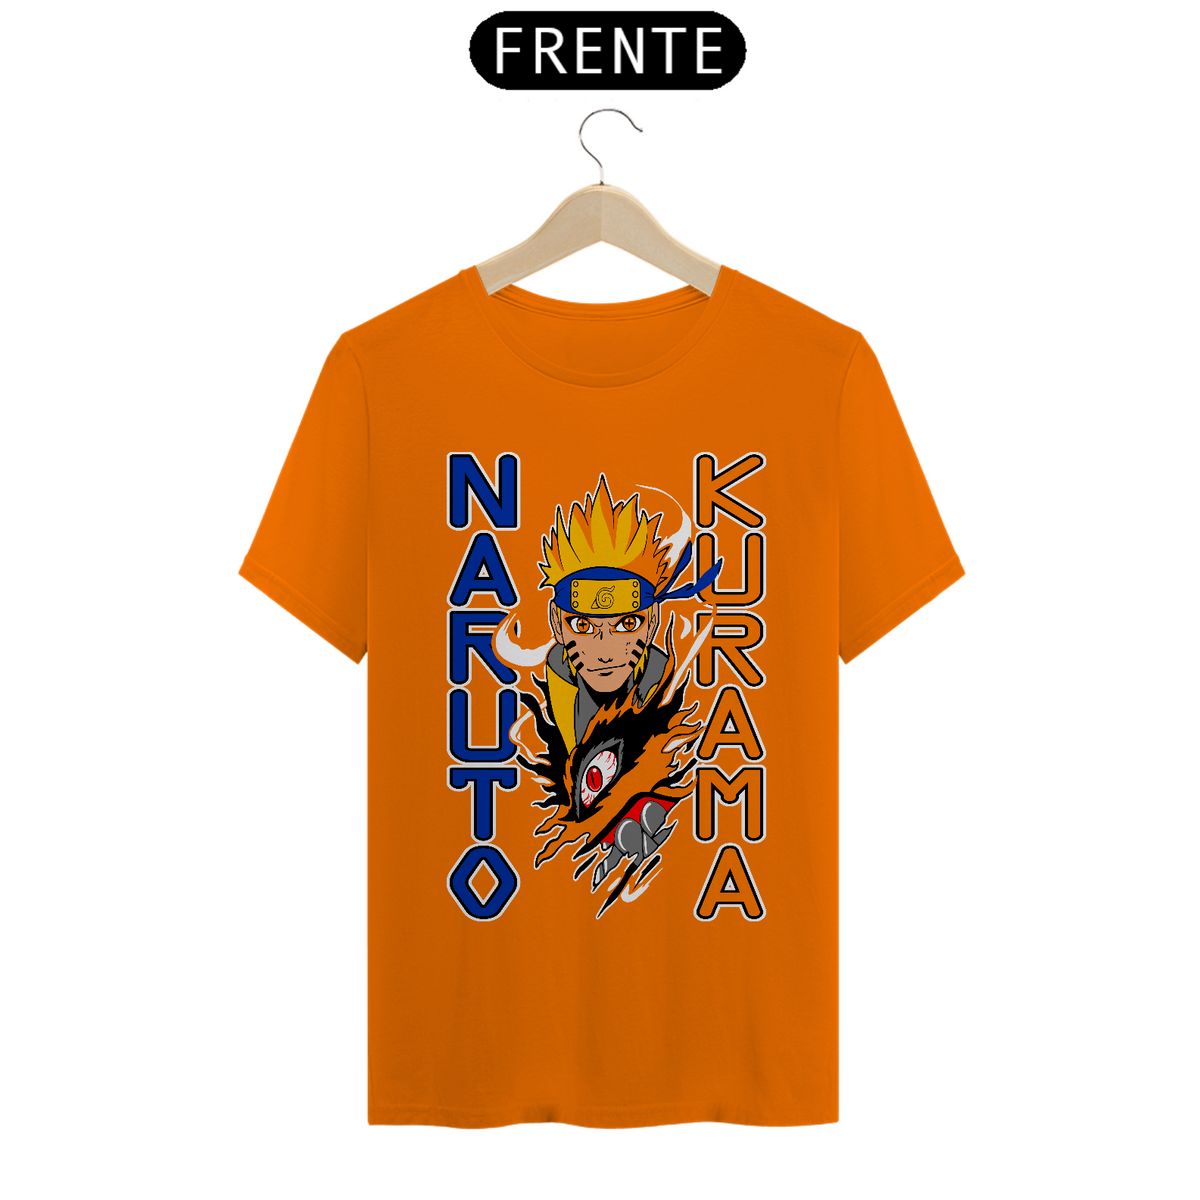 Nome do produto: Naruto 08